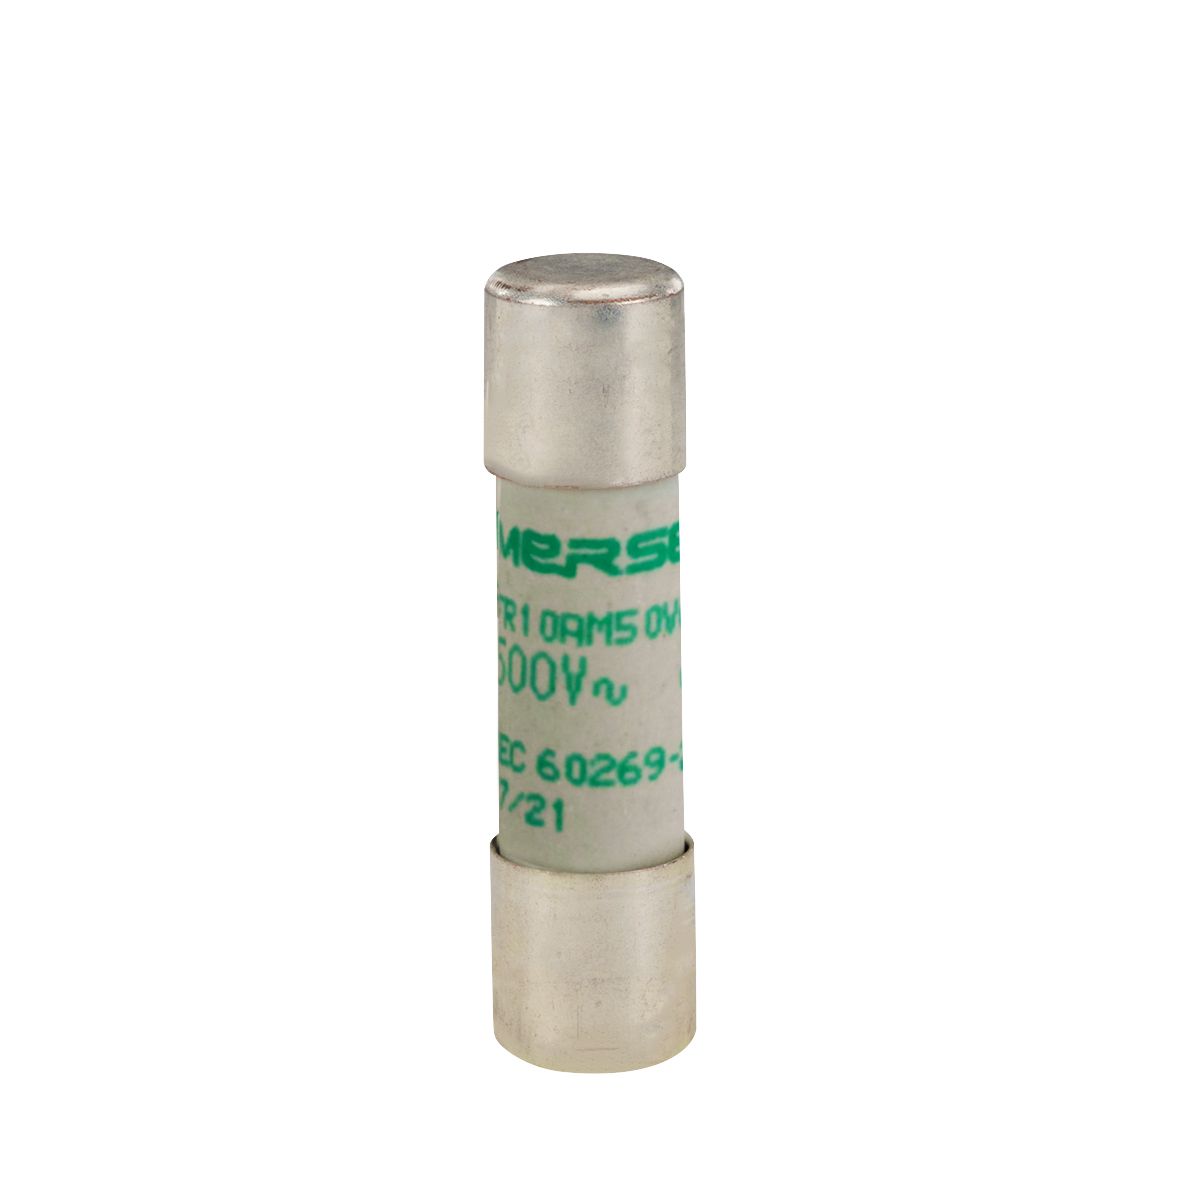 Y211552 - Cylindrical fuse-link aM 500VAC 10.3x38, 10A